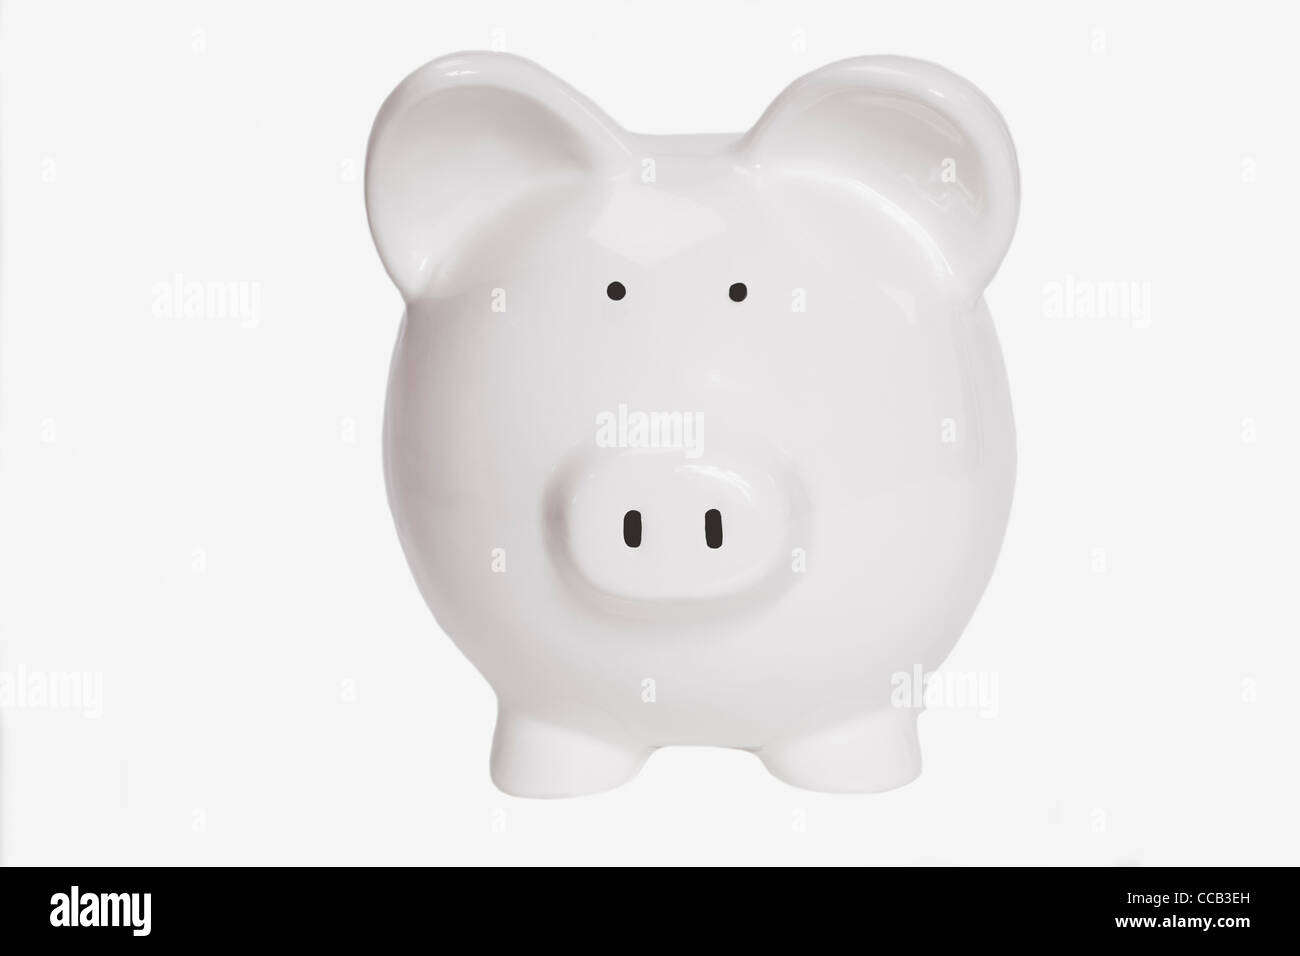 Detailansicht eines weißen Sparschweines | Detail photo of a white piggy bank Stock Photo